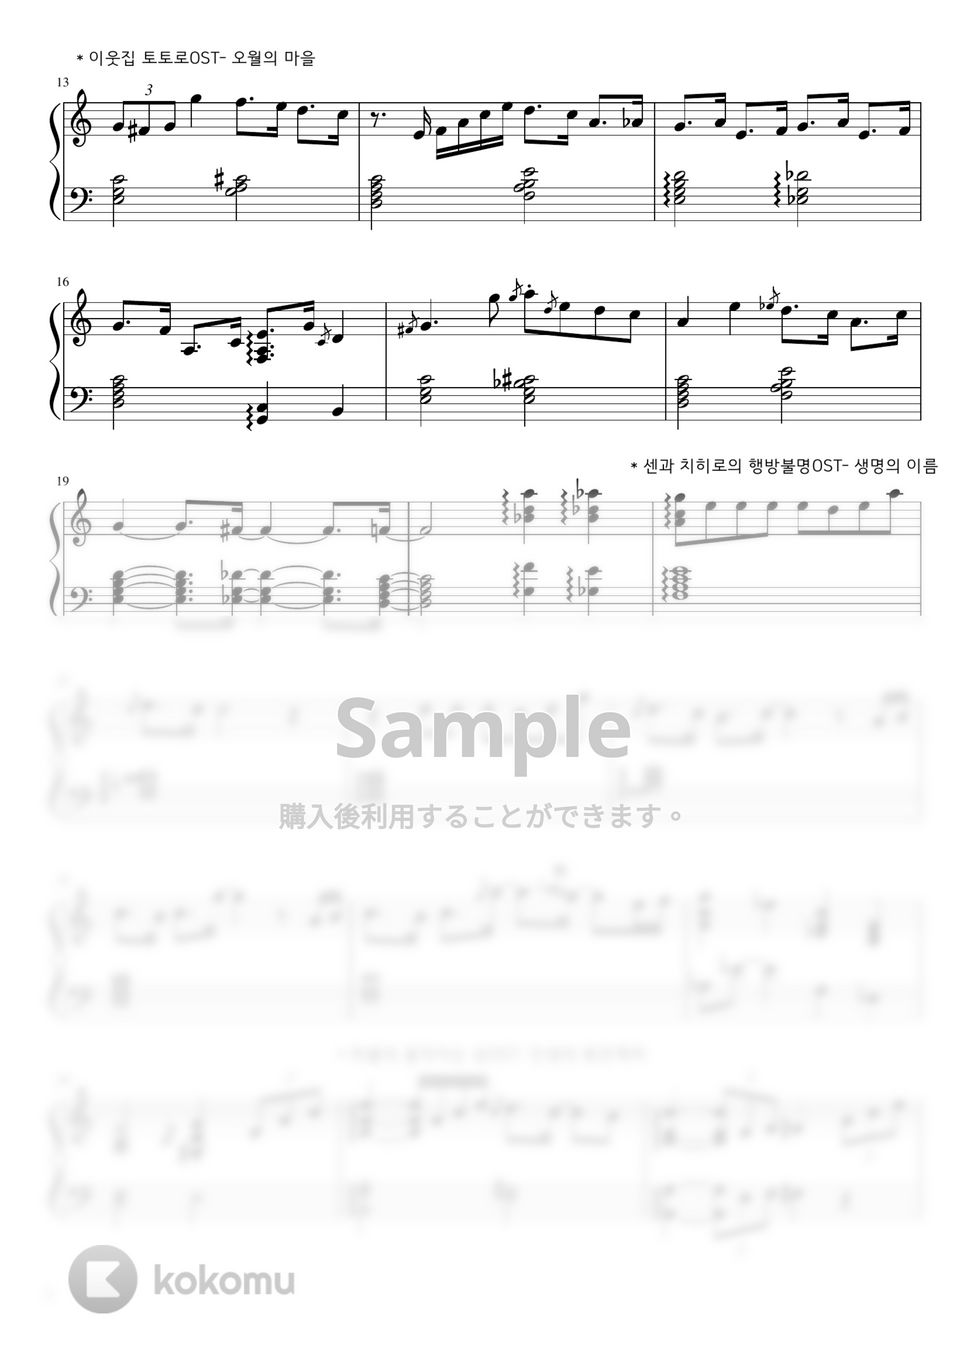 Ghibli Studio - Lo-fi jazz Ghibli Medley (jazz medley) by hellobluejoy